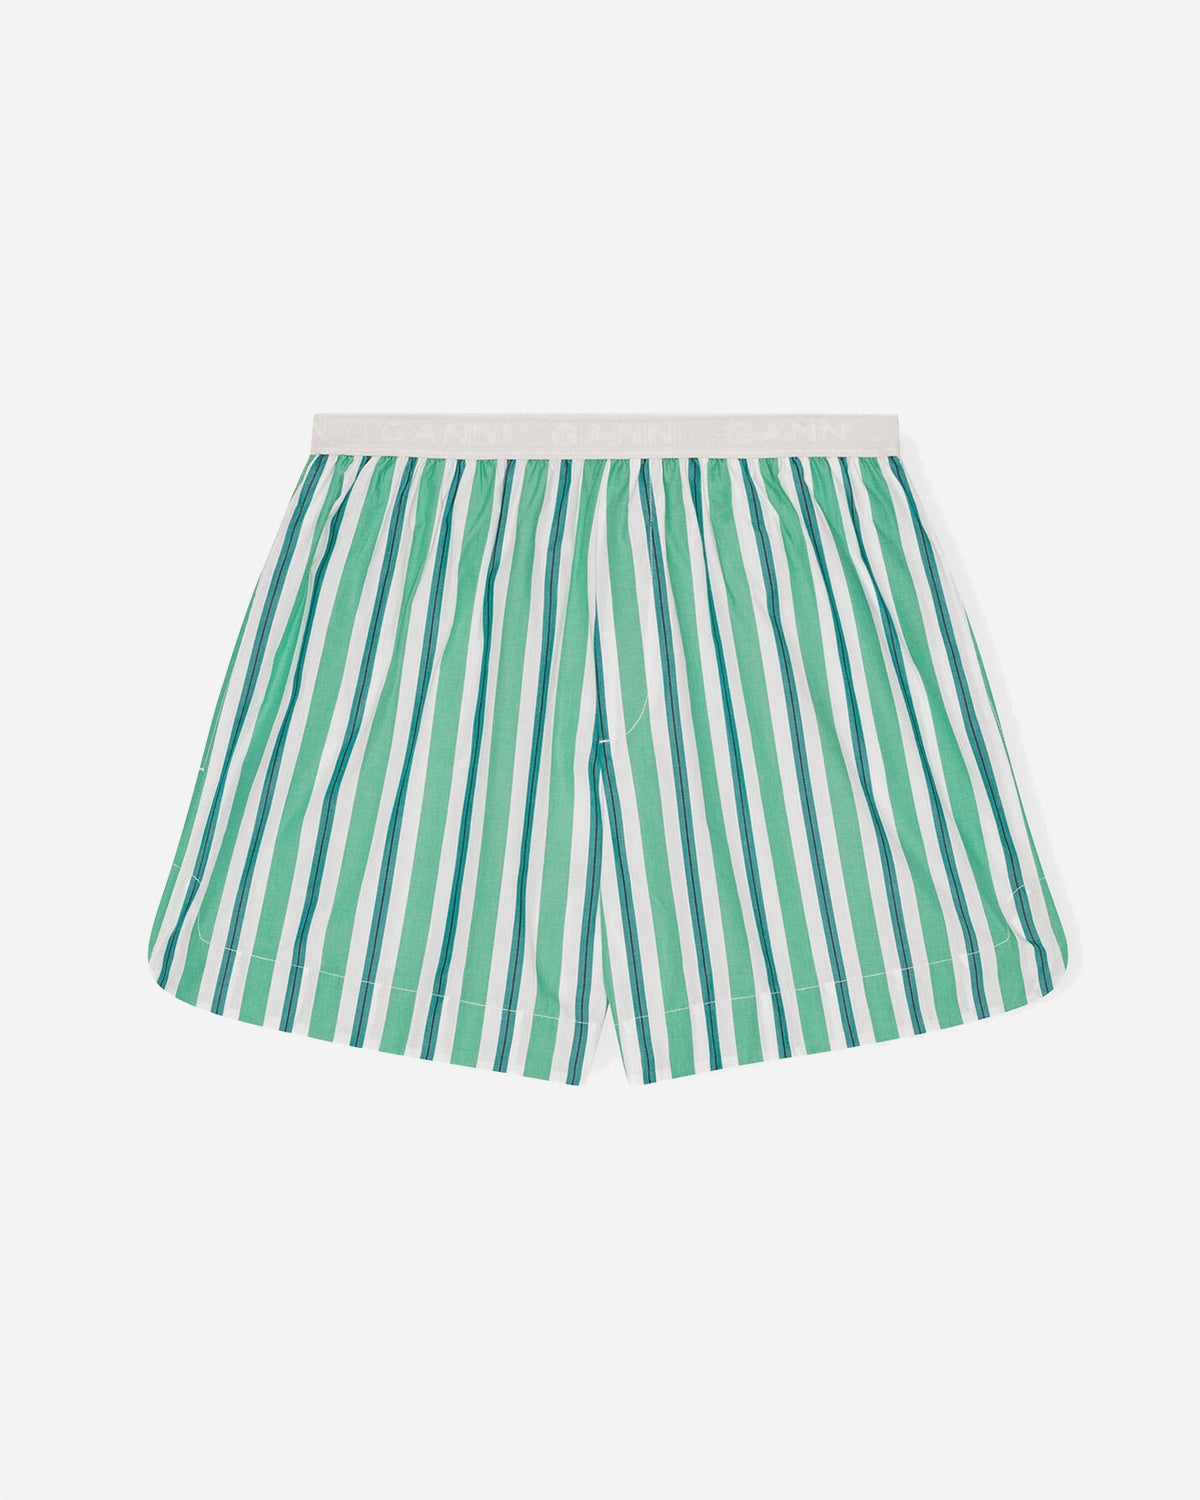 Stripe Cotton Elasticated Shorts - Creme de Menthe